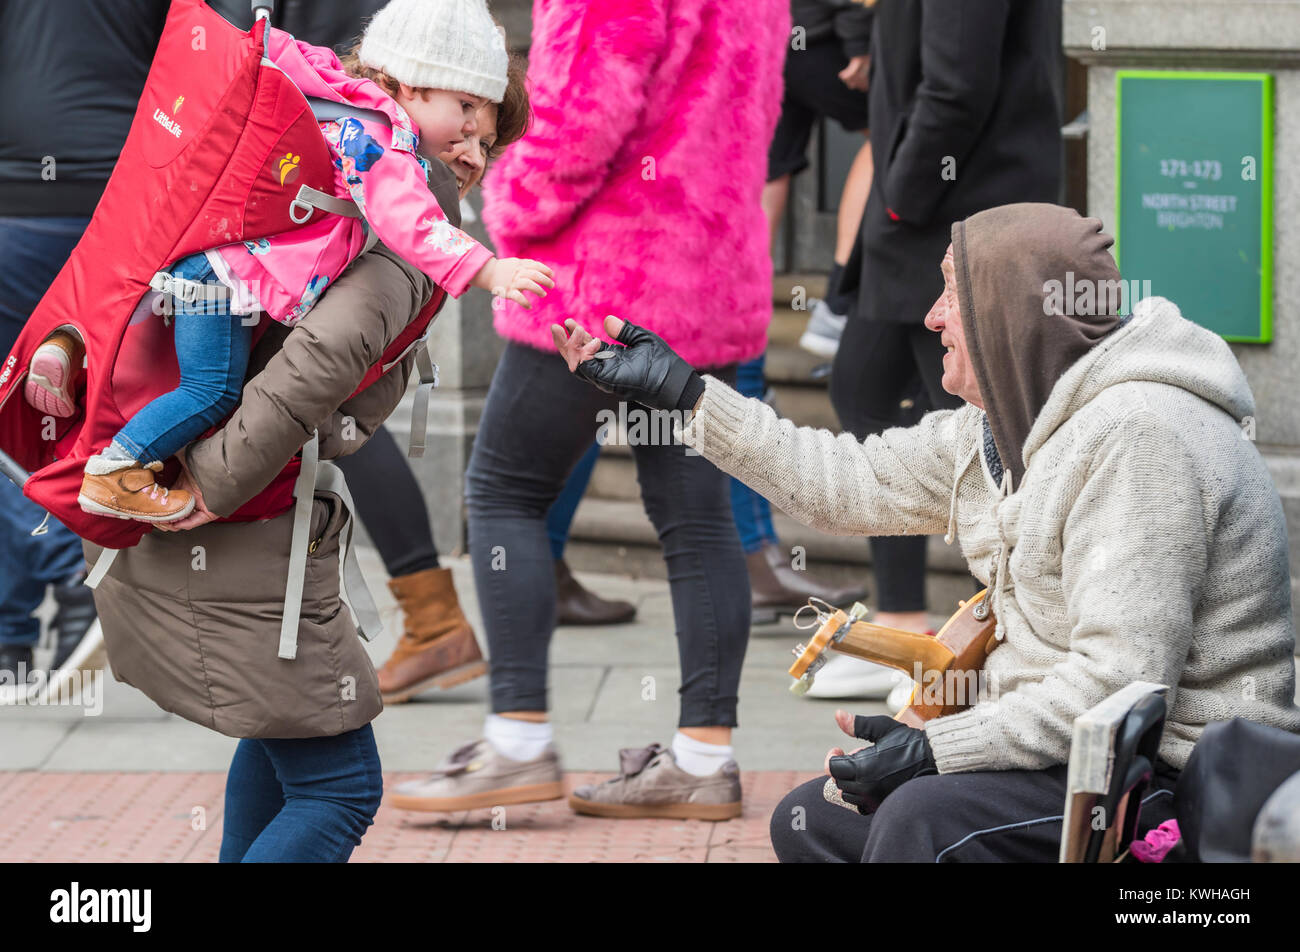 Junge Kind auf den Schultern der Frau Geld geben zu einer Straße Gaukler in Großbritannien. Handout Stockfoto